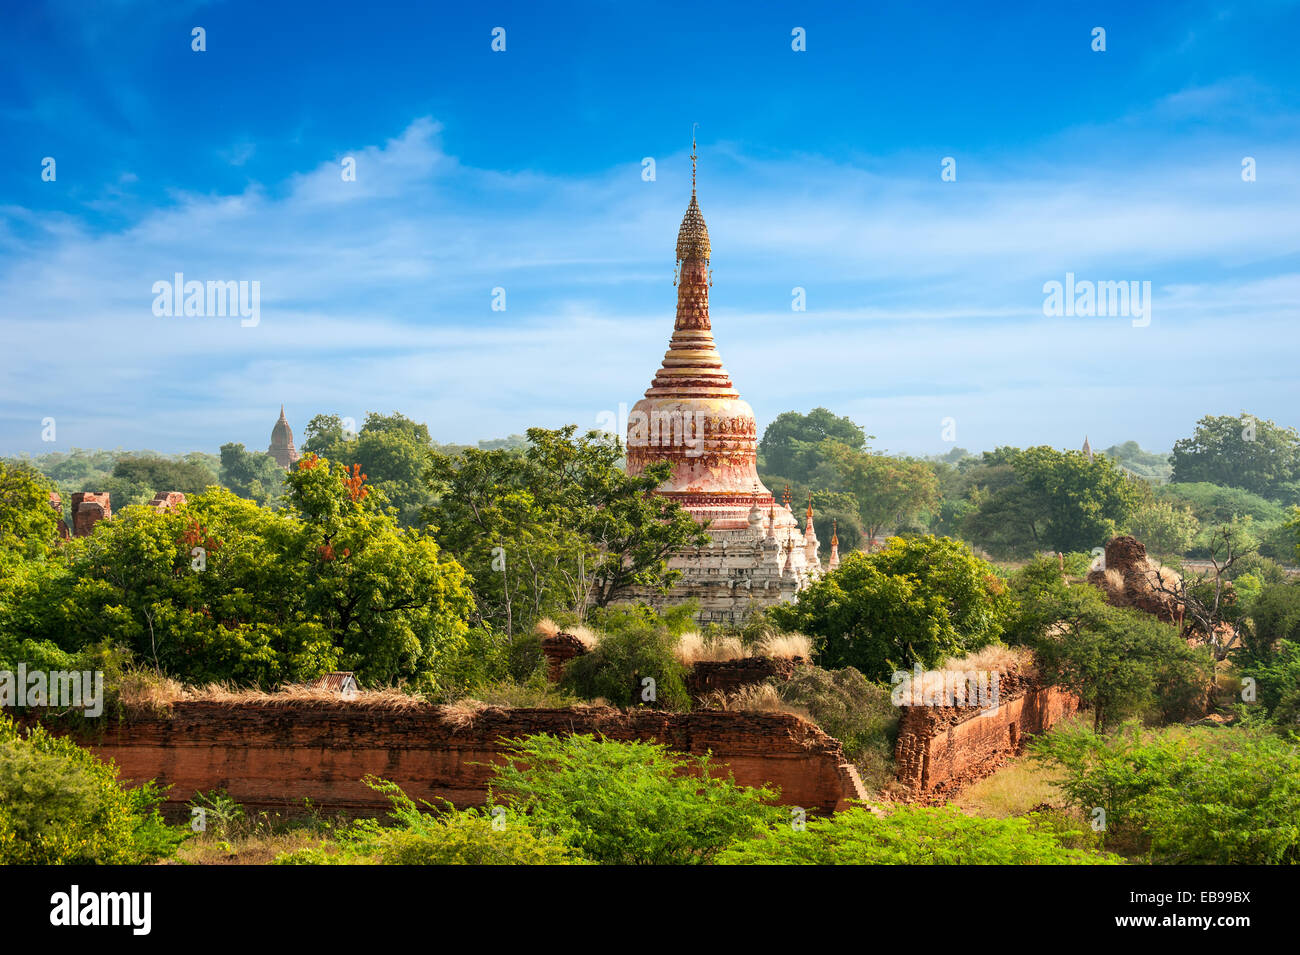 Paesaggi di viaggi e destinazioni. La fantastica architettura di vecchi templi buddisti a Bagan unito, Myanmar (Birmania) Foto Stock